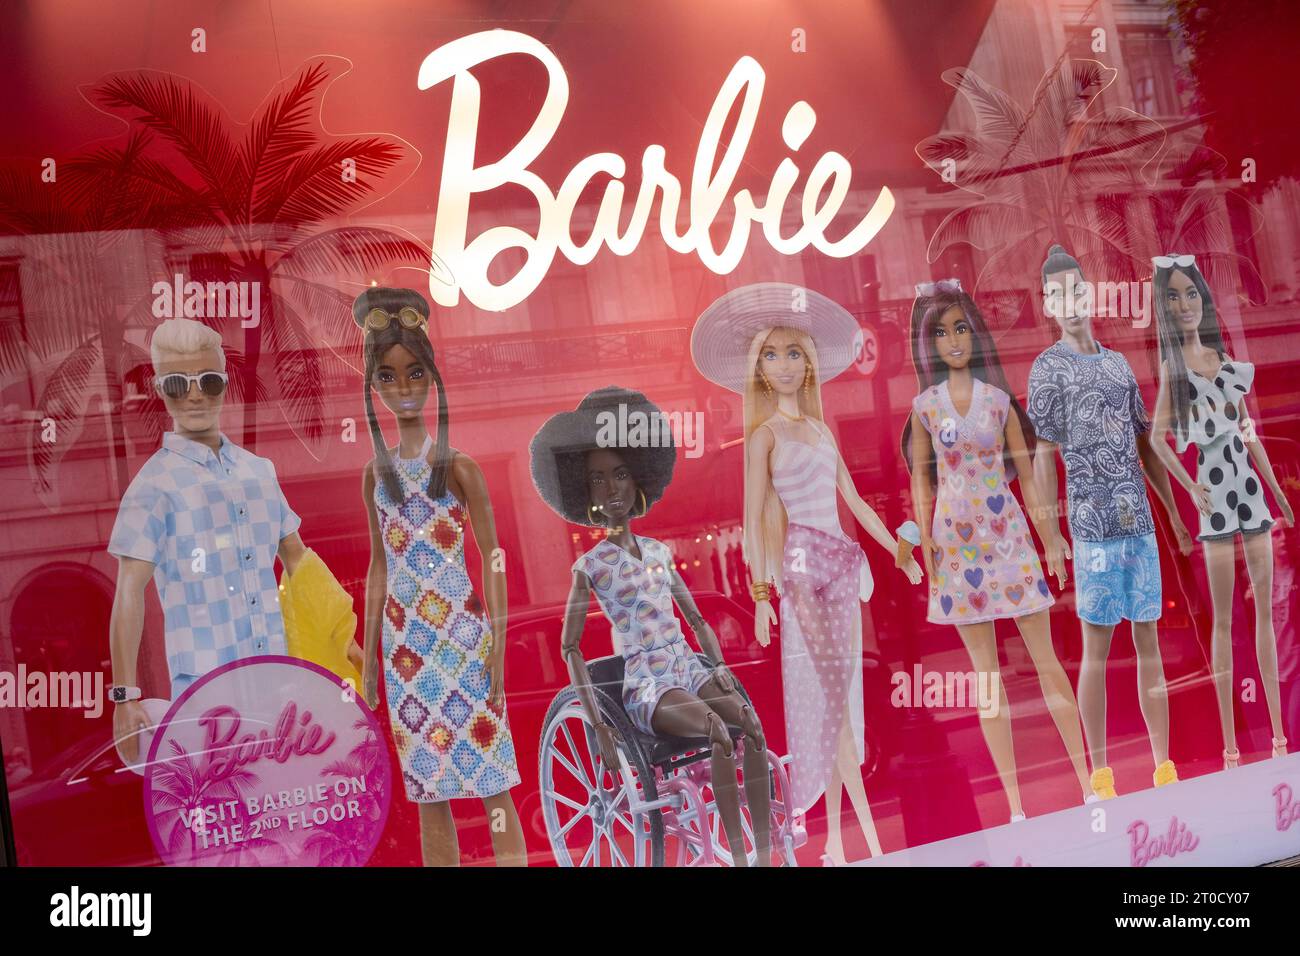 Materiale promozionale per le bambole Barbie nella vetrina del negozio di giocattoli Hamleys il 27 settembre 2023 a Londra, Regno Unito. Barbie è una bambola di moda creata dalla donna d'affari americana Ruth Handler, prodotta dall'azienda di giocattoli americana Mattel e lanciata nel 1959. Il giocattolo è il fiore all'occhiello del marchio Barbie, che include una gamma di bambole e accessori alla moda. Foto Stock